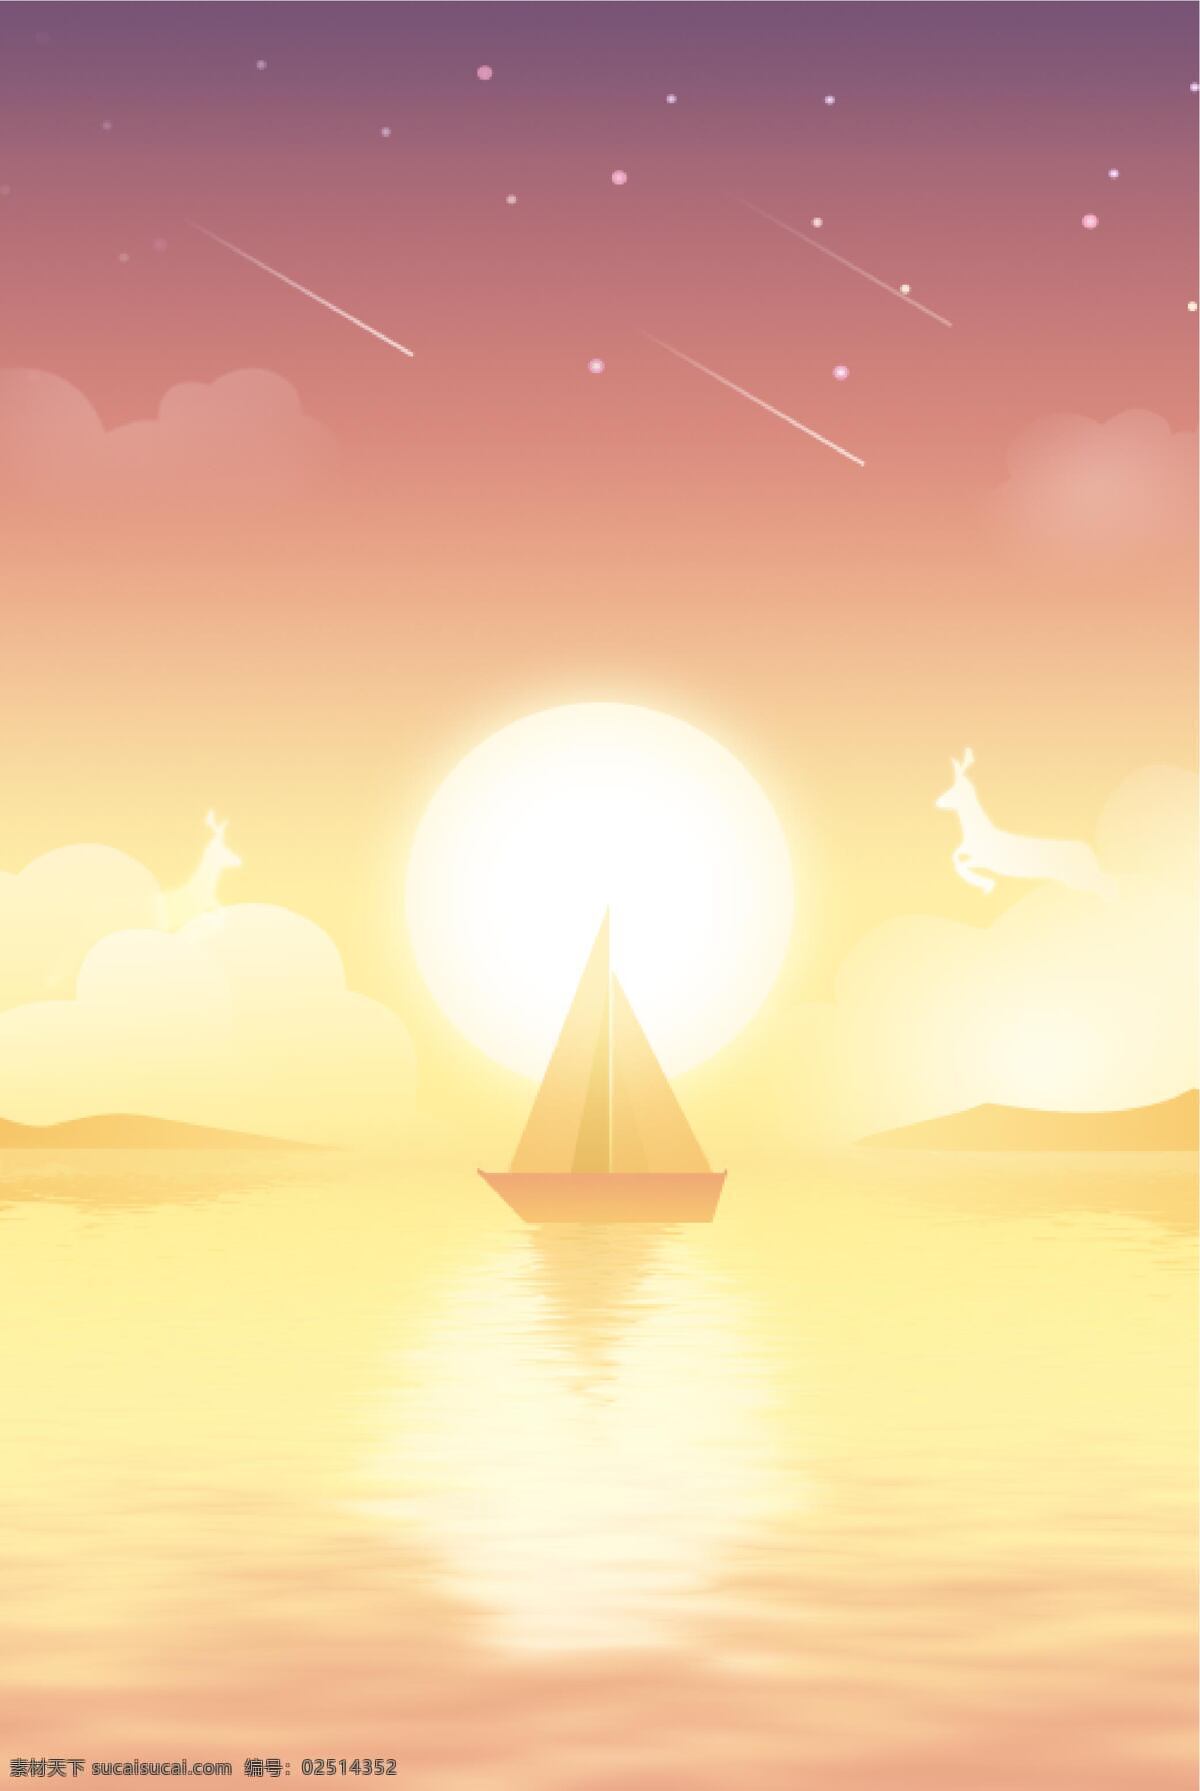 帆船图片 插画 背景 海报 元素 动漫动画